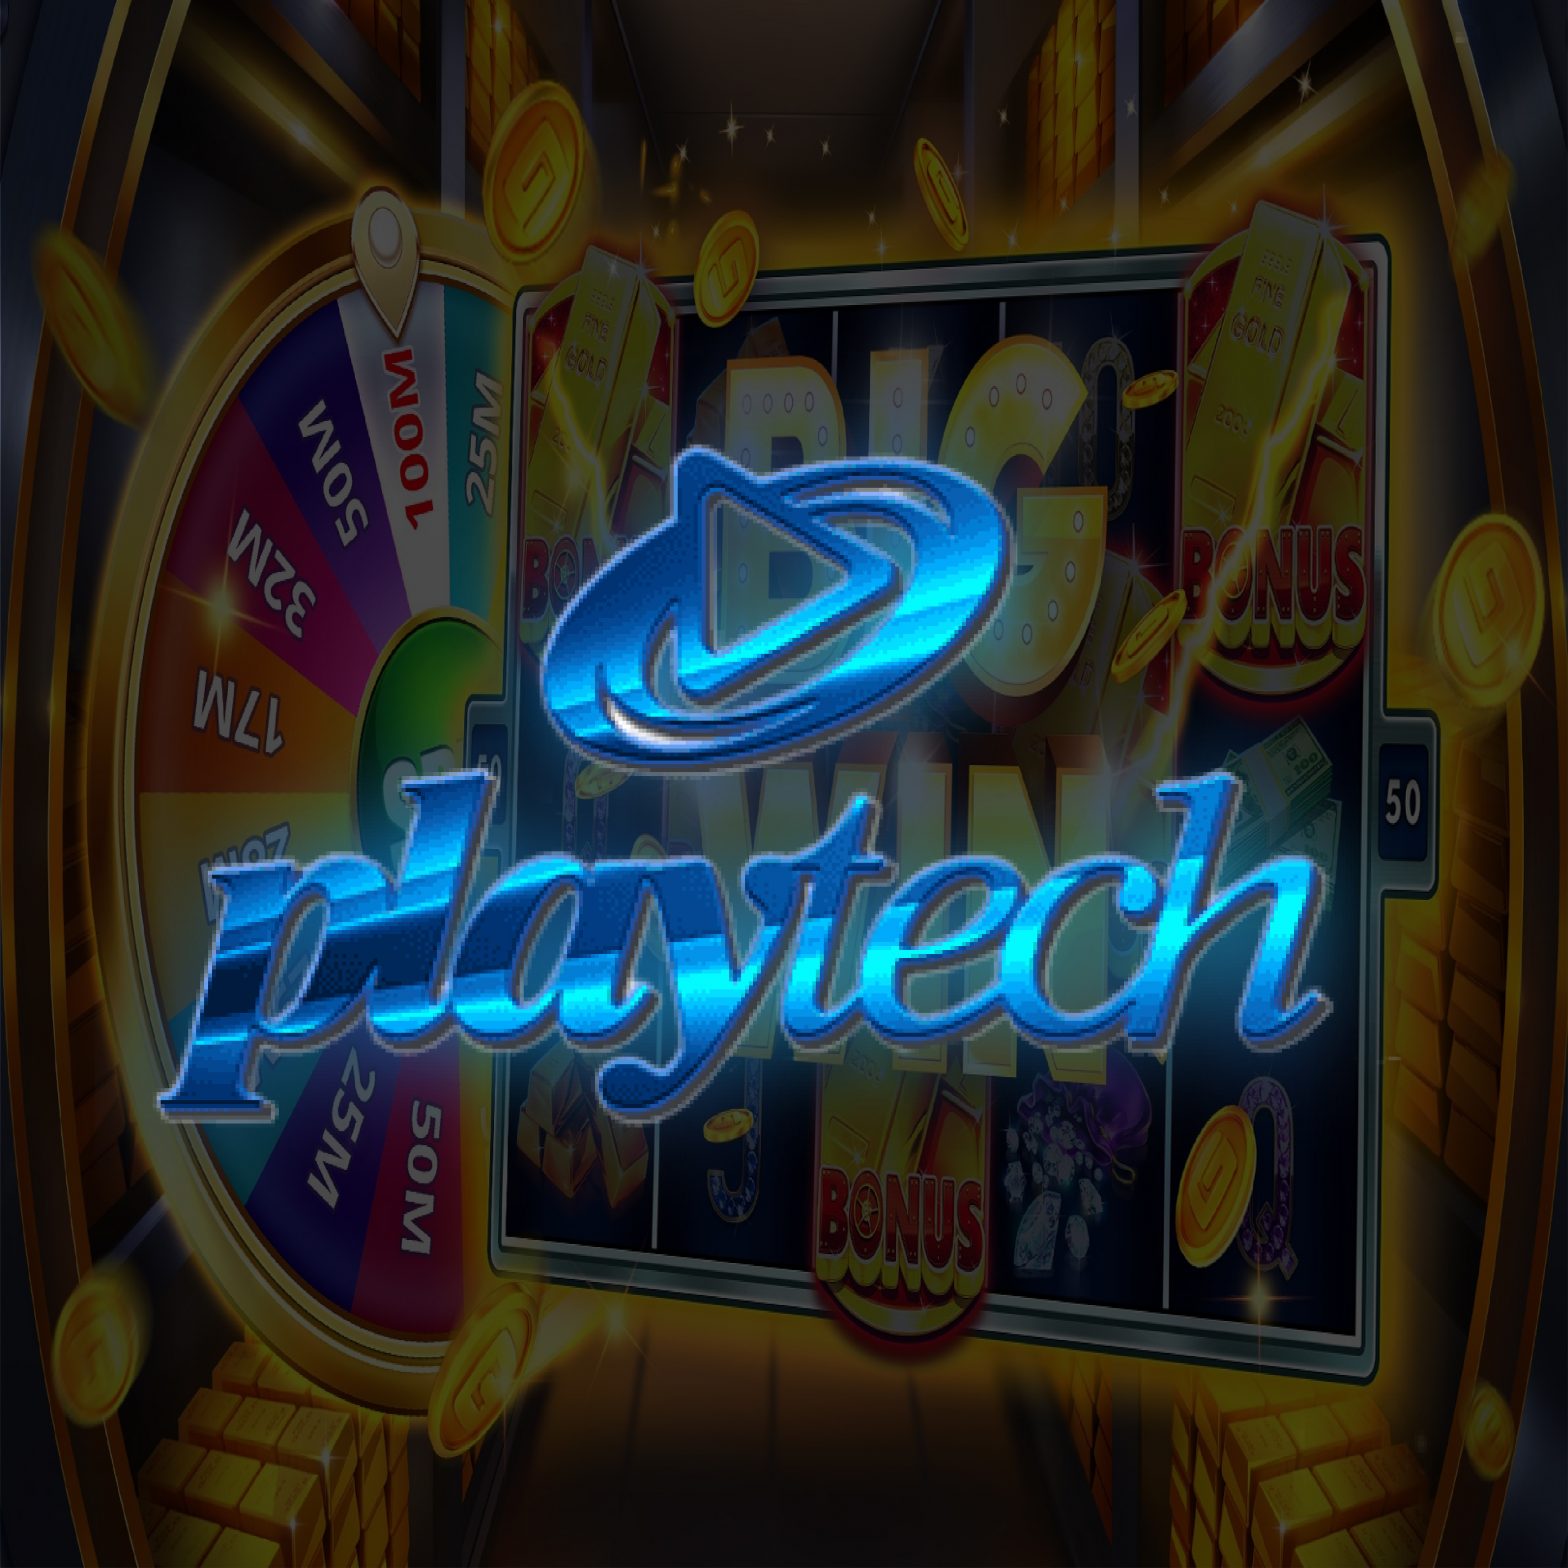 Playtech Live Casino Malaysia